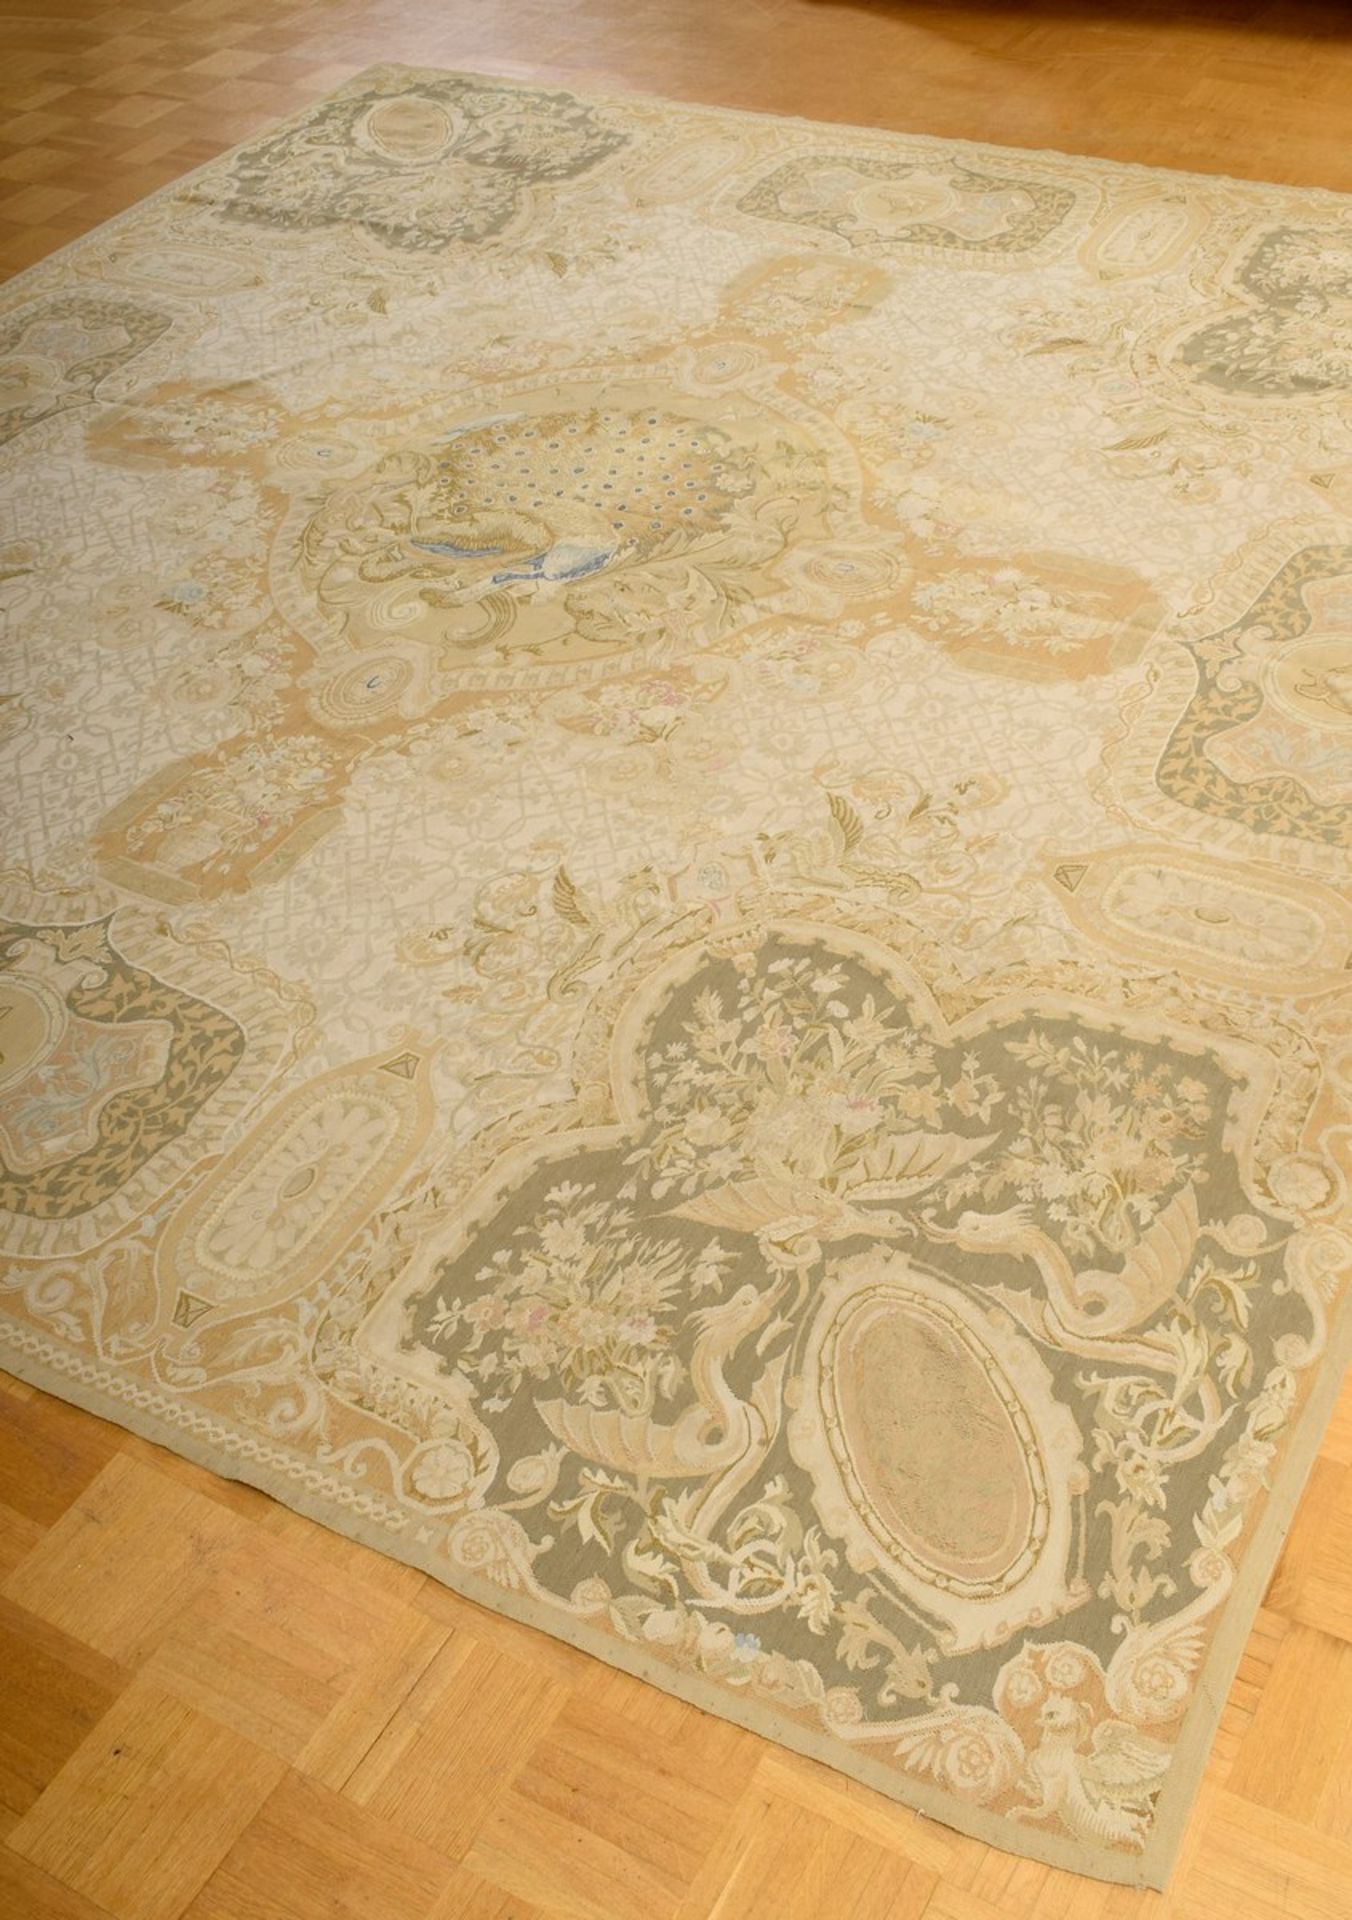 Großer Aubusson Teppich in Grün- und Beigetönen nach altem Vorbild, 20.Jh., 280x310cm - Bild 2 aus 9